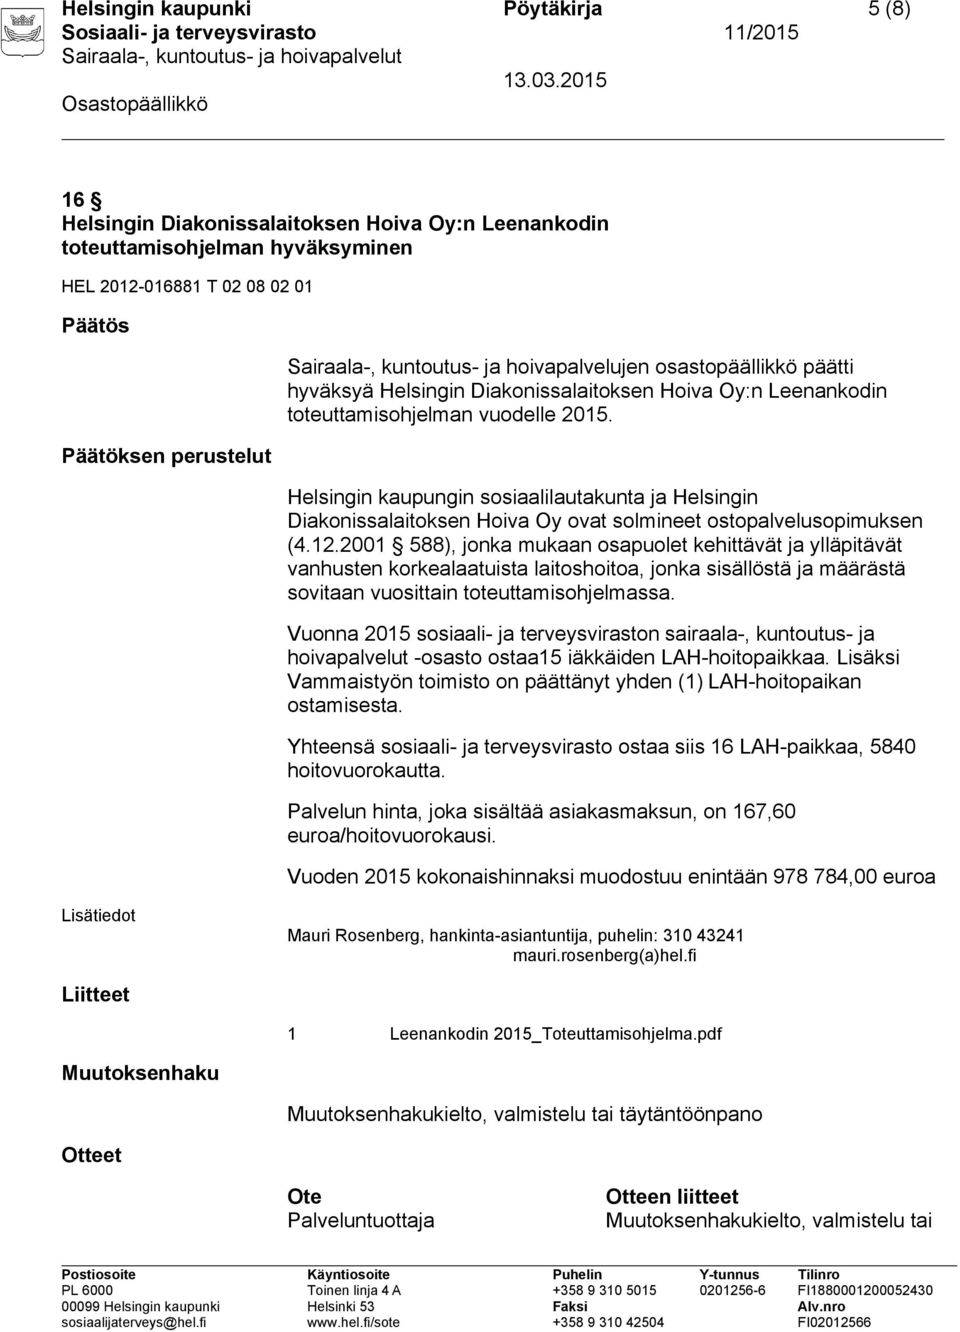 Helsingin kaupungin sosiaalilautakunta ja Helsingin Diakonissalaitoksen Hoiva Oy ovat solmineet ostopalvelusopimuksen (4.12.